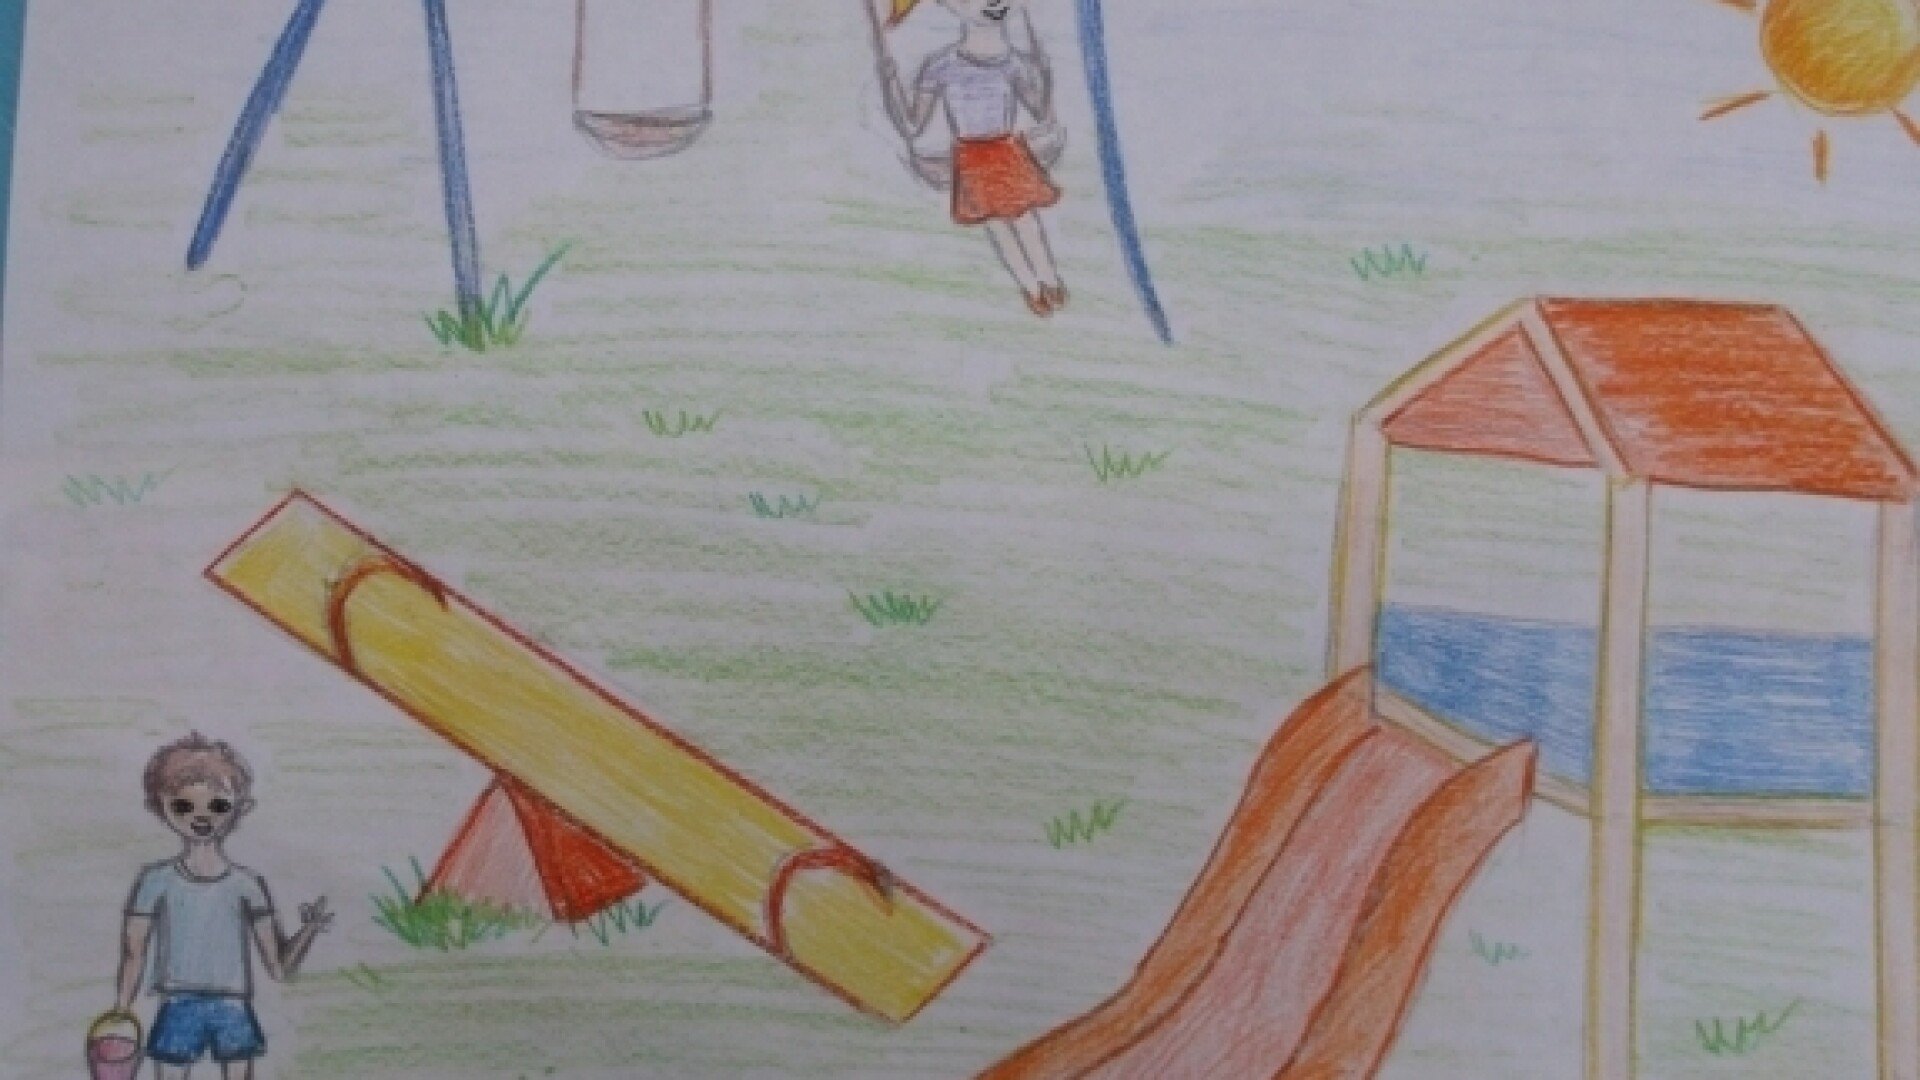 Детская площадка для рисования